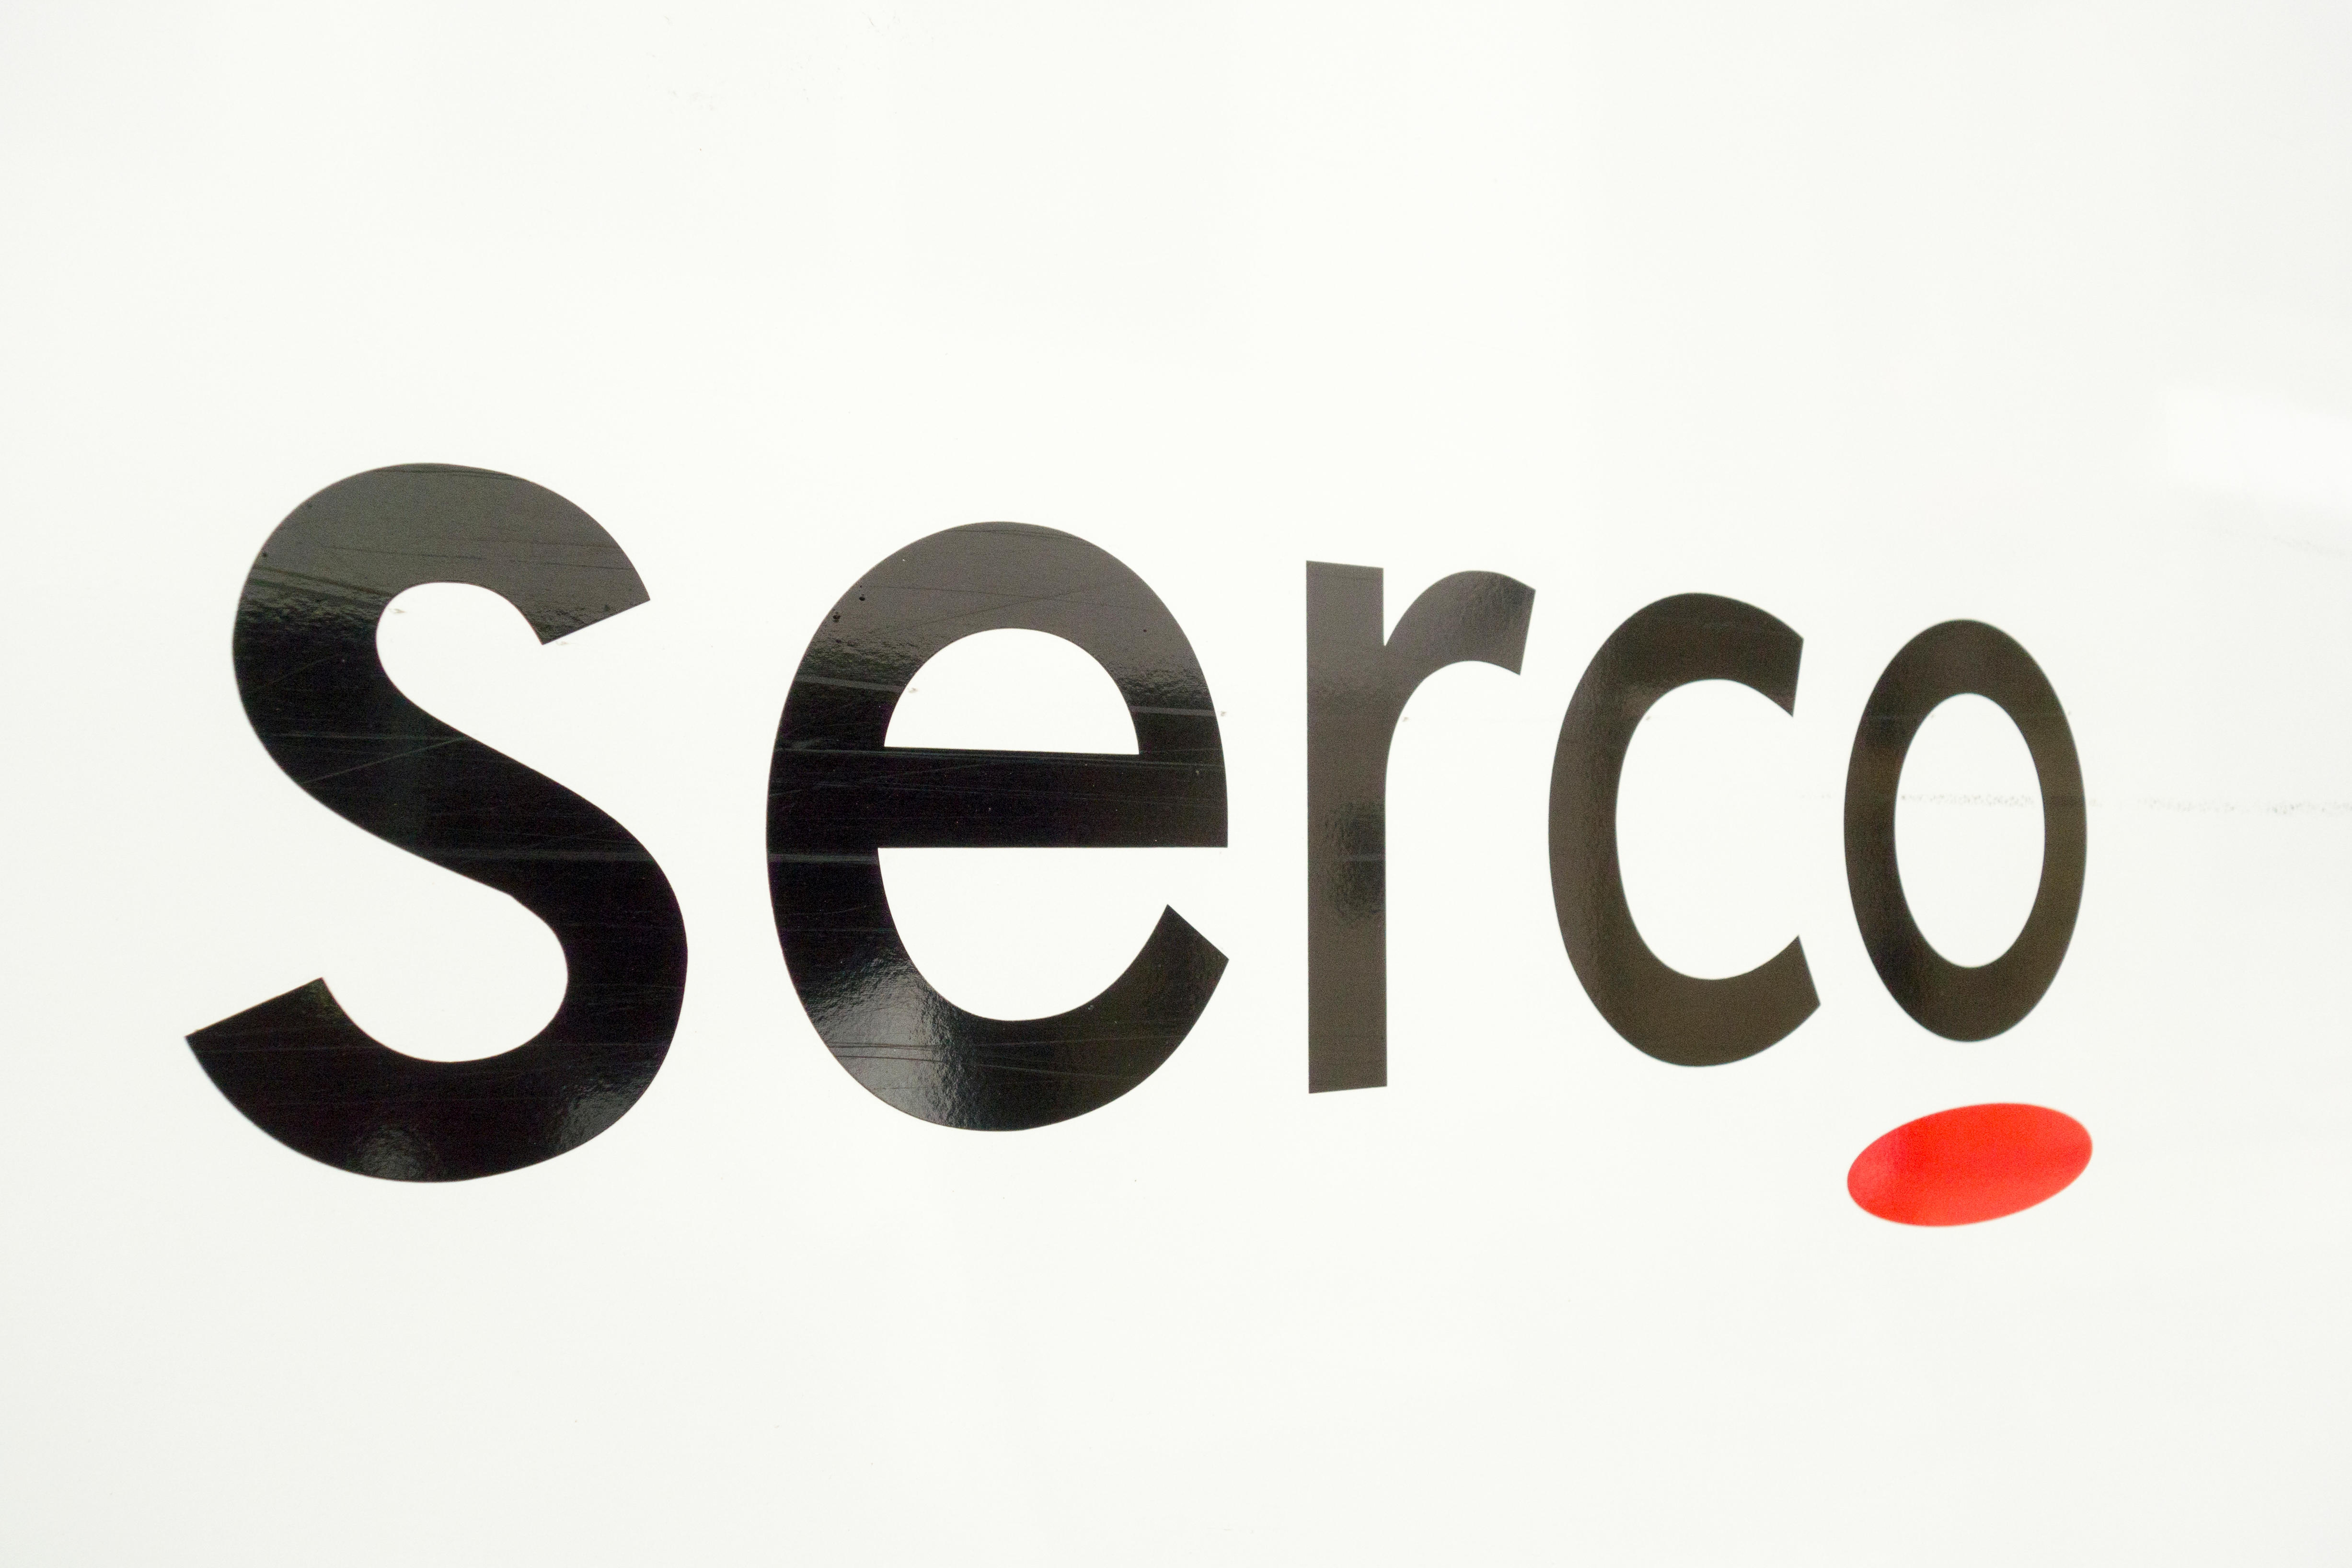 Serco Leisure nutzte die Technologie zusammen mit dem Fingerabdruck-Scanning bei mehr als 2.000 Mitarbeitern auf seiner Gehaltsliste